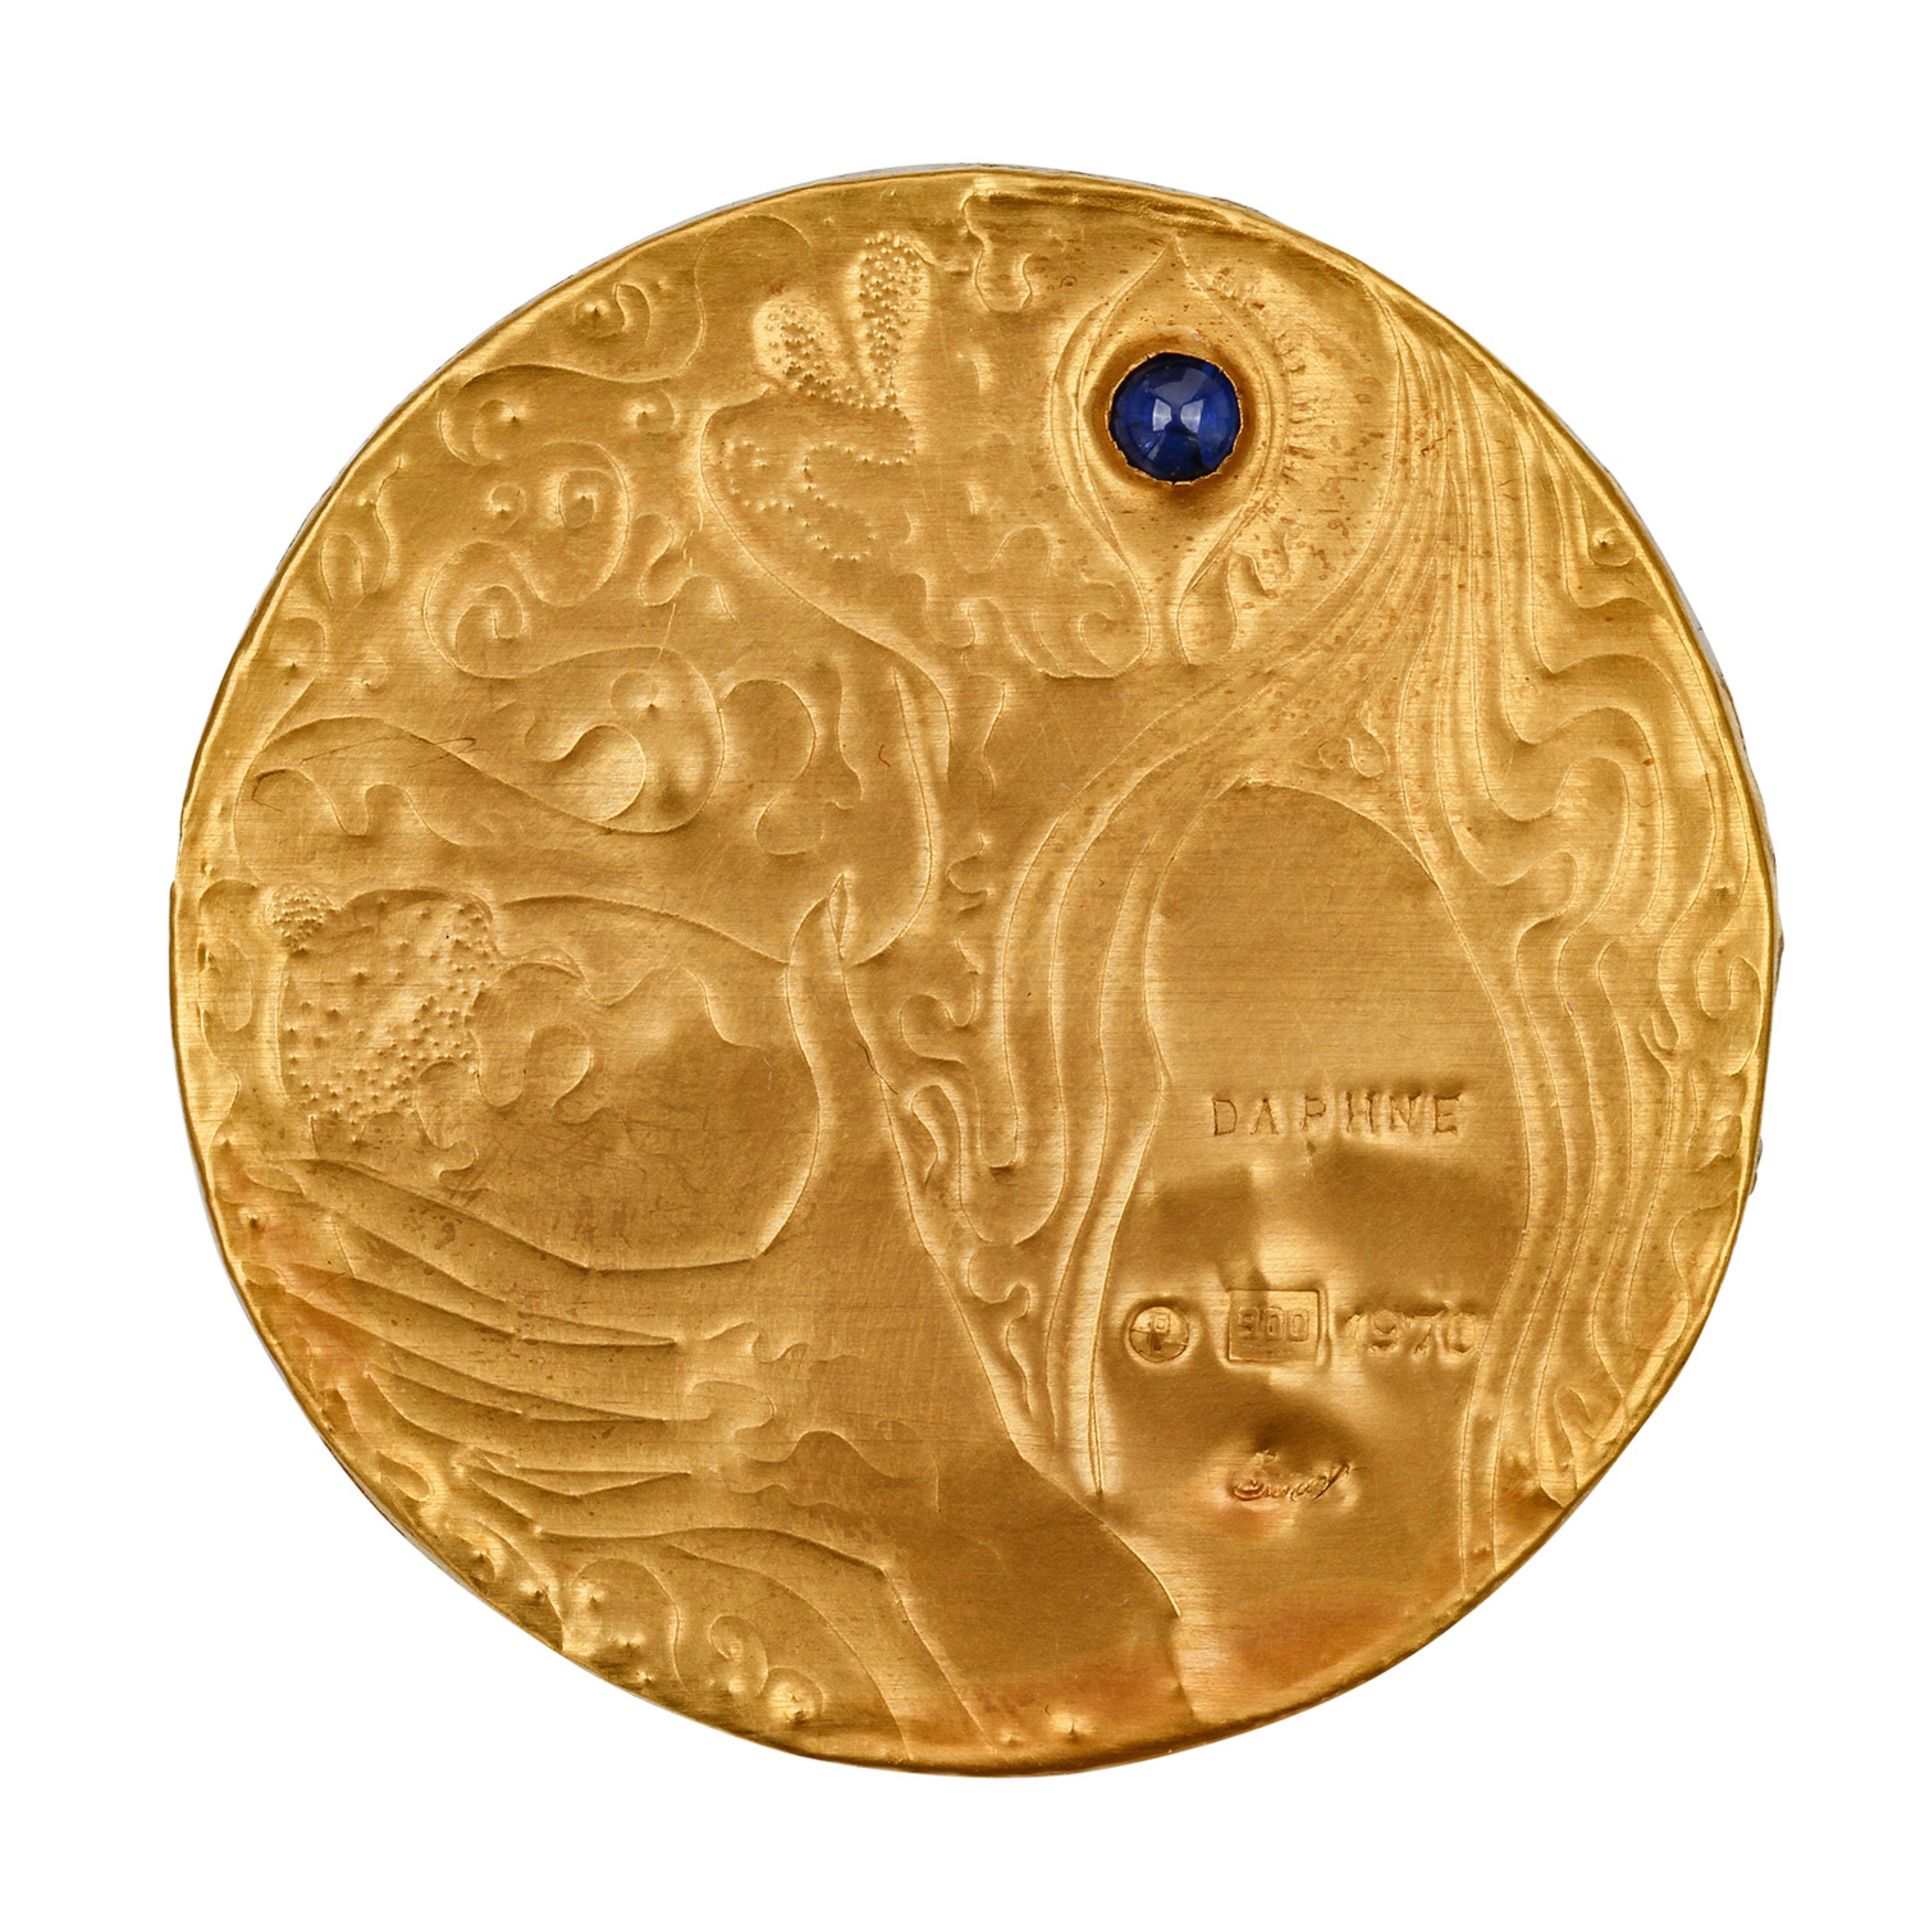 Goldminiatur "Daphne" (1970) von E. BURGEL,Gold 900, 1 Saphir, getrieben + ziseliert, auf Acryl, - Bild 2 aus 4